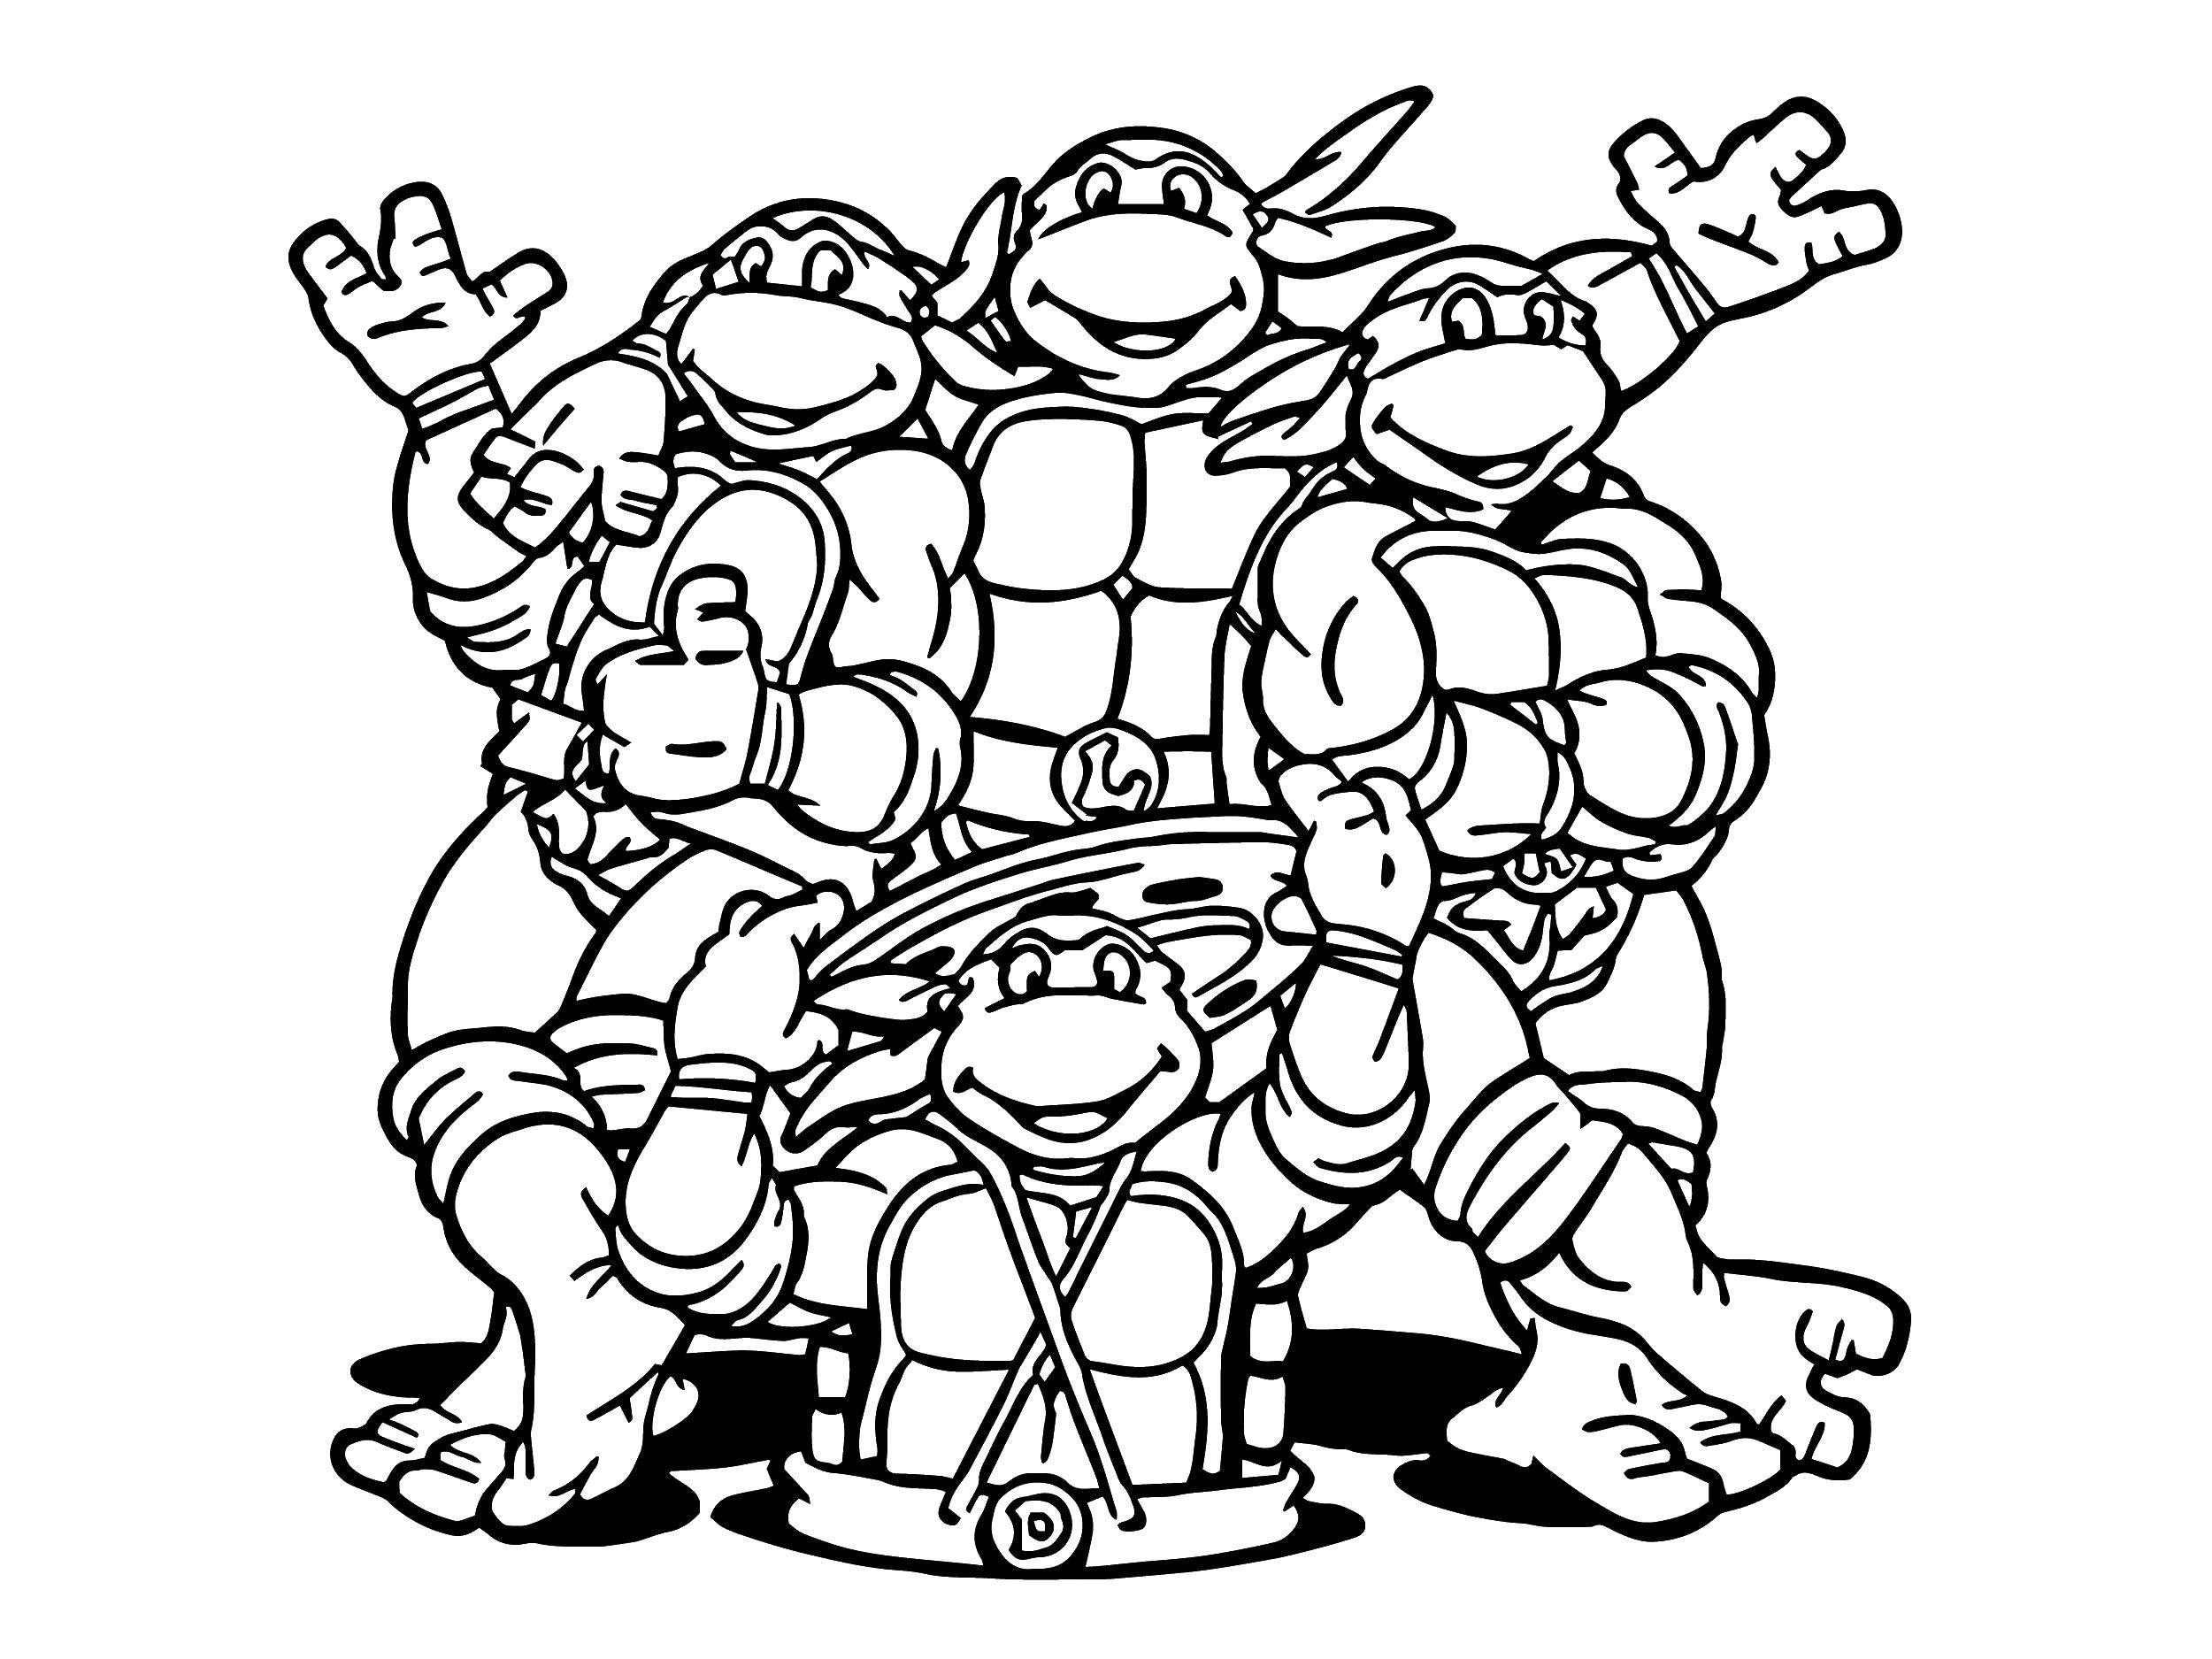 Coloring Friends turtles ninzdya. Category teenage mutant ninja turtles. Tags:  Comics, Teenage Mutant Ninja Turtles.